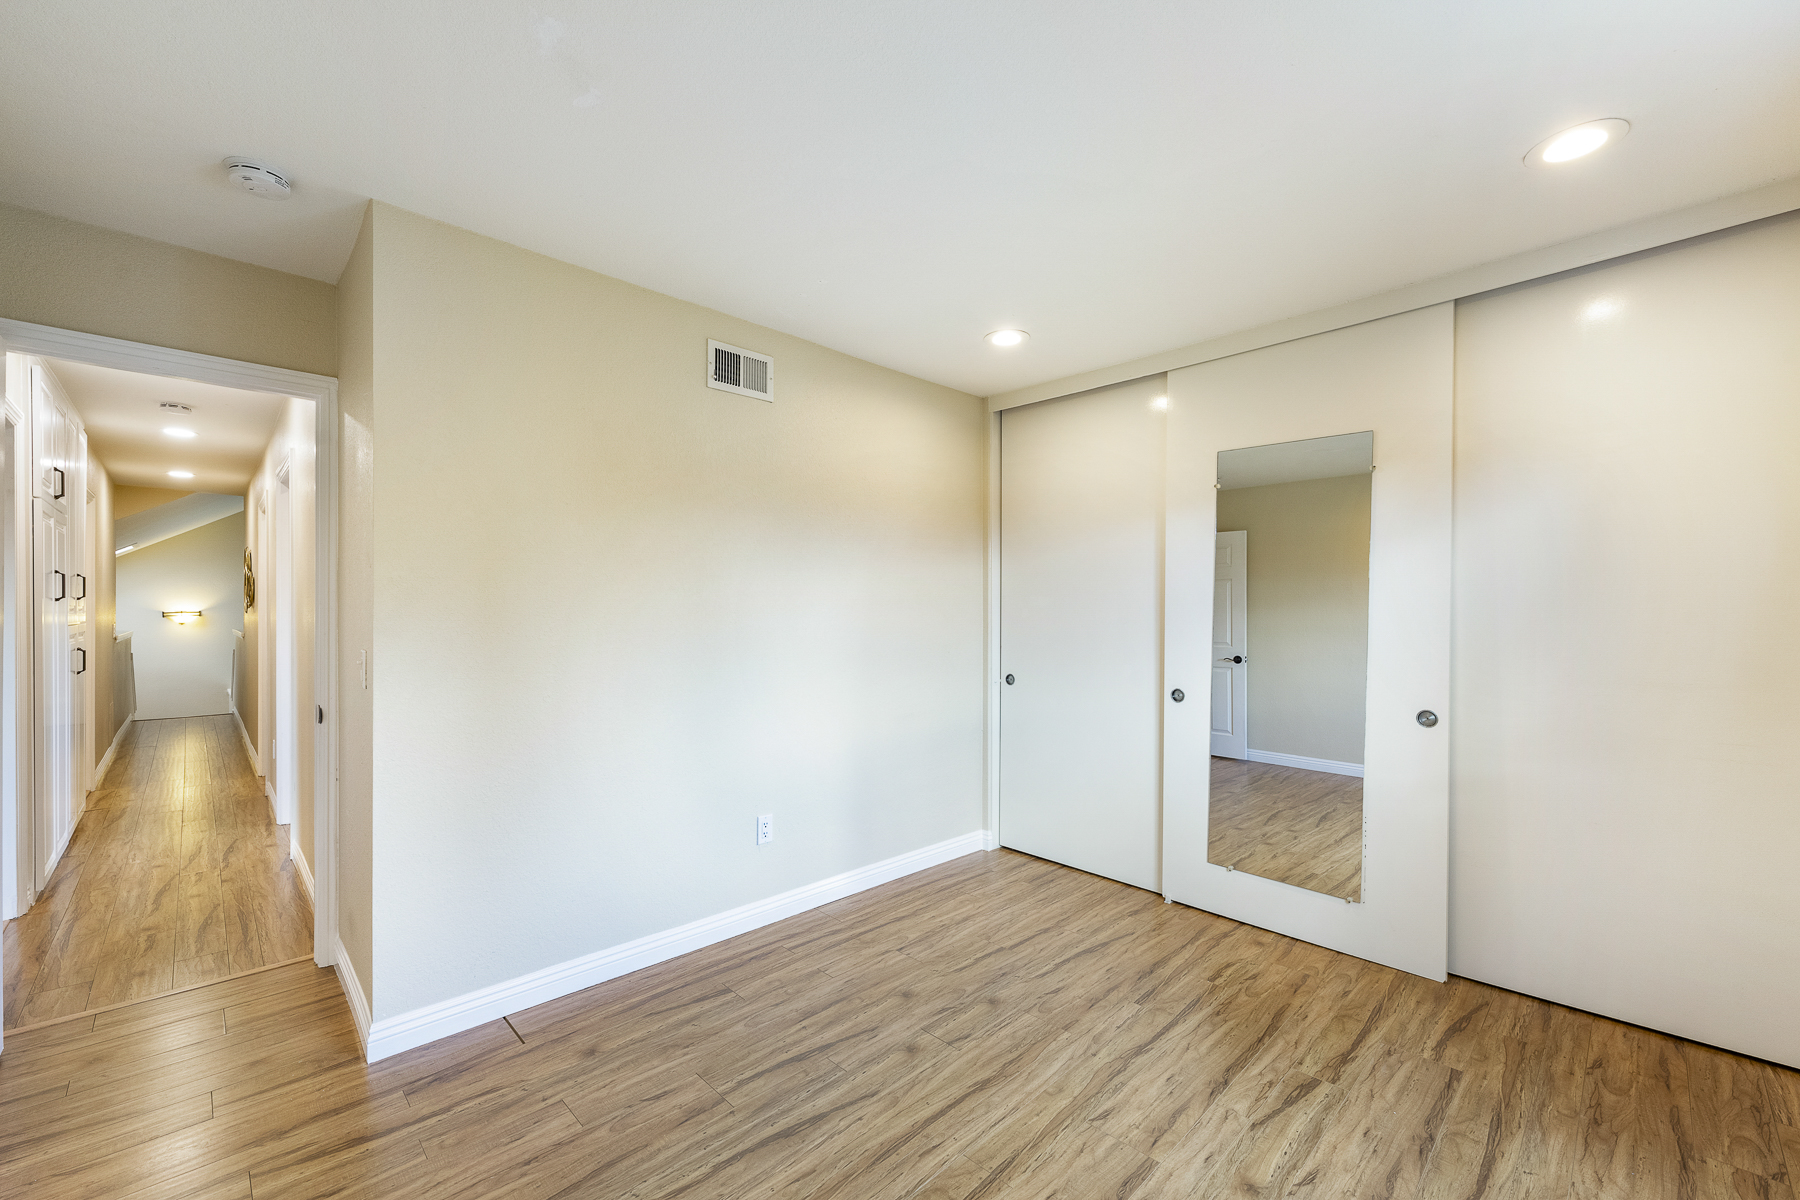 Corner with sliding door, hardwood floors, and hallway